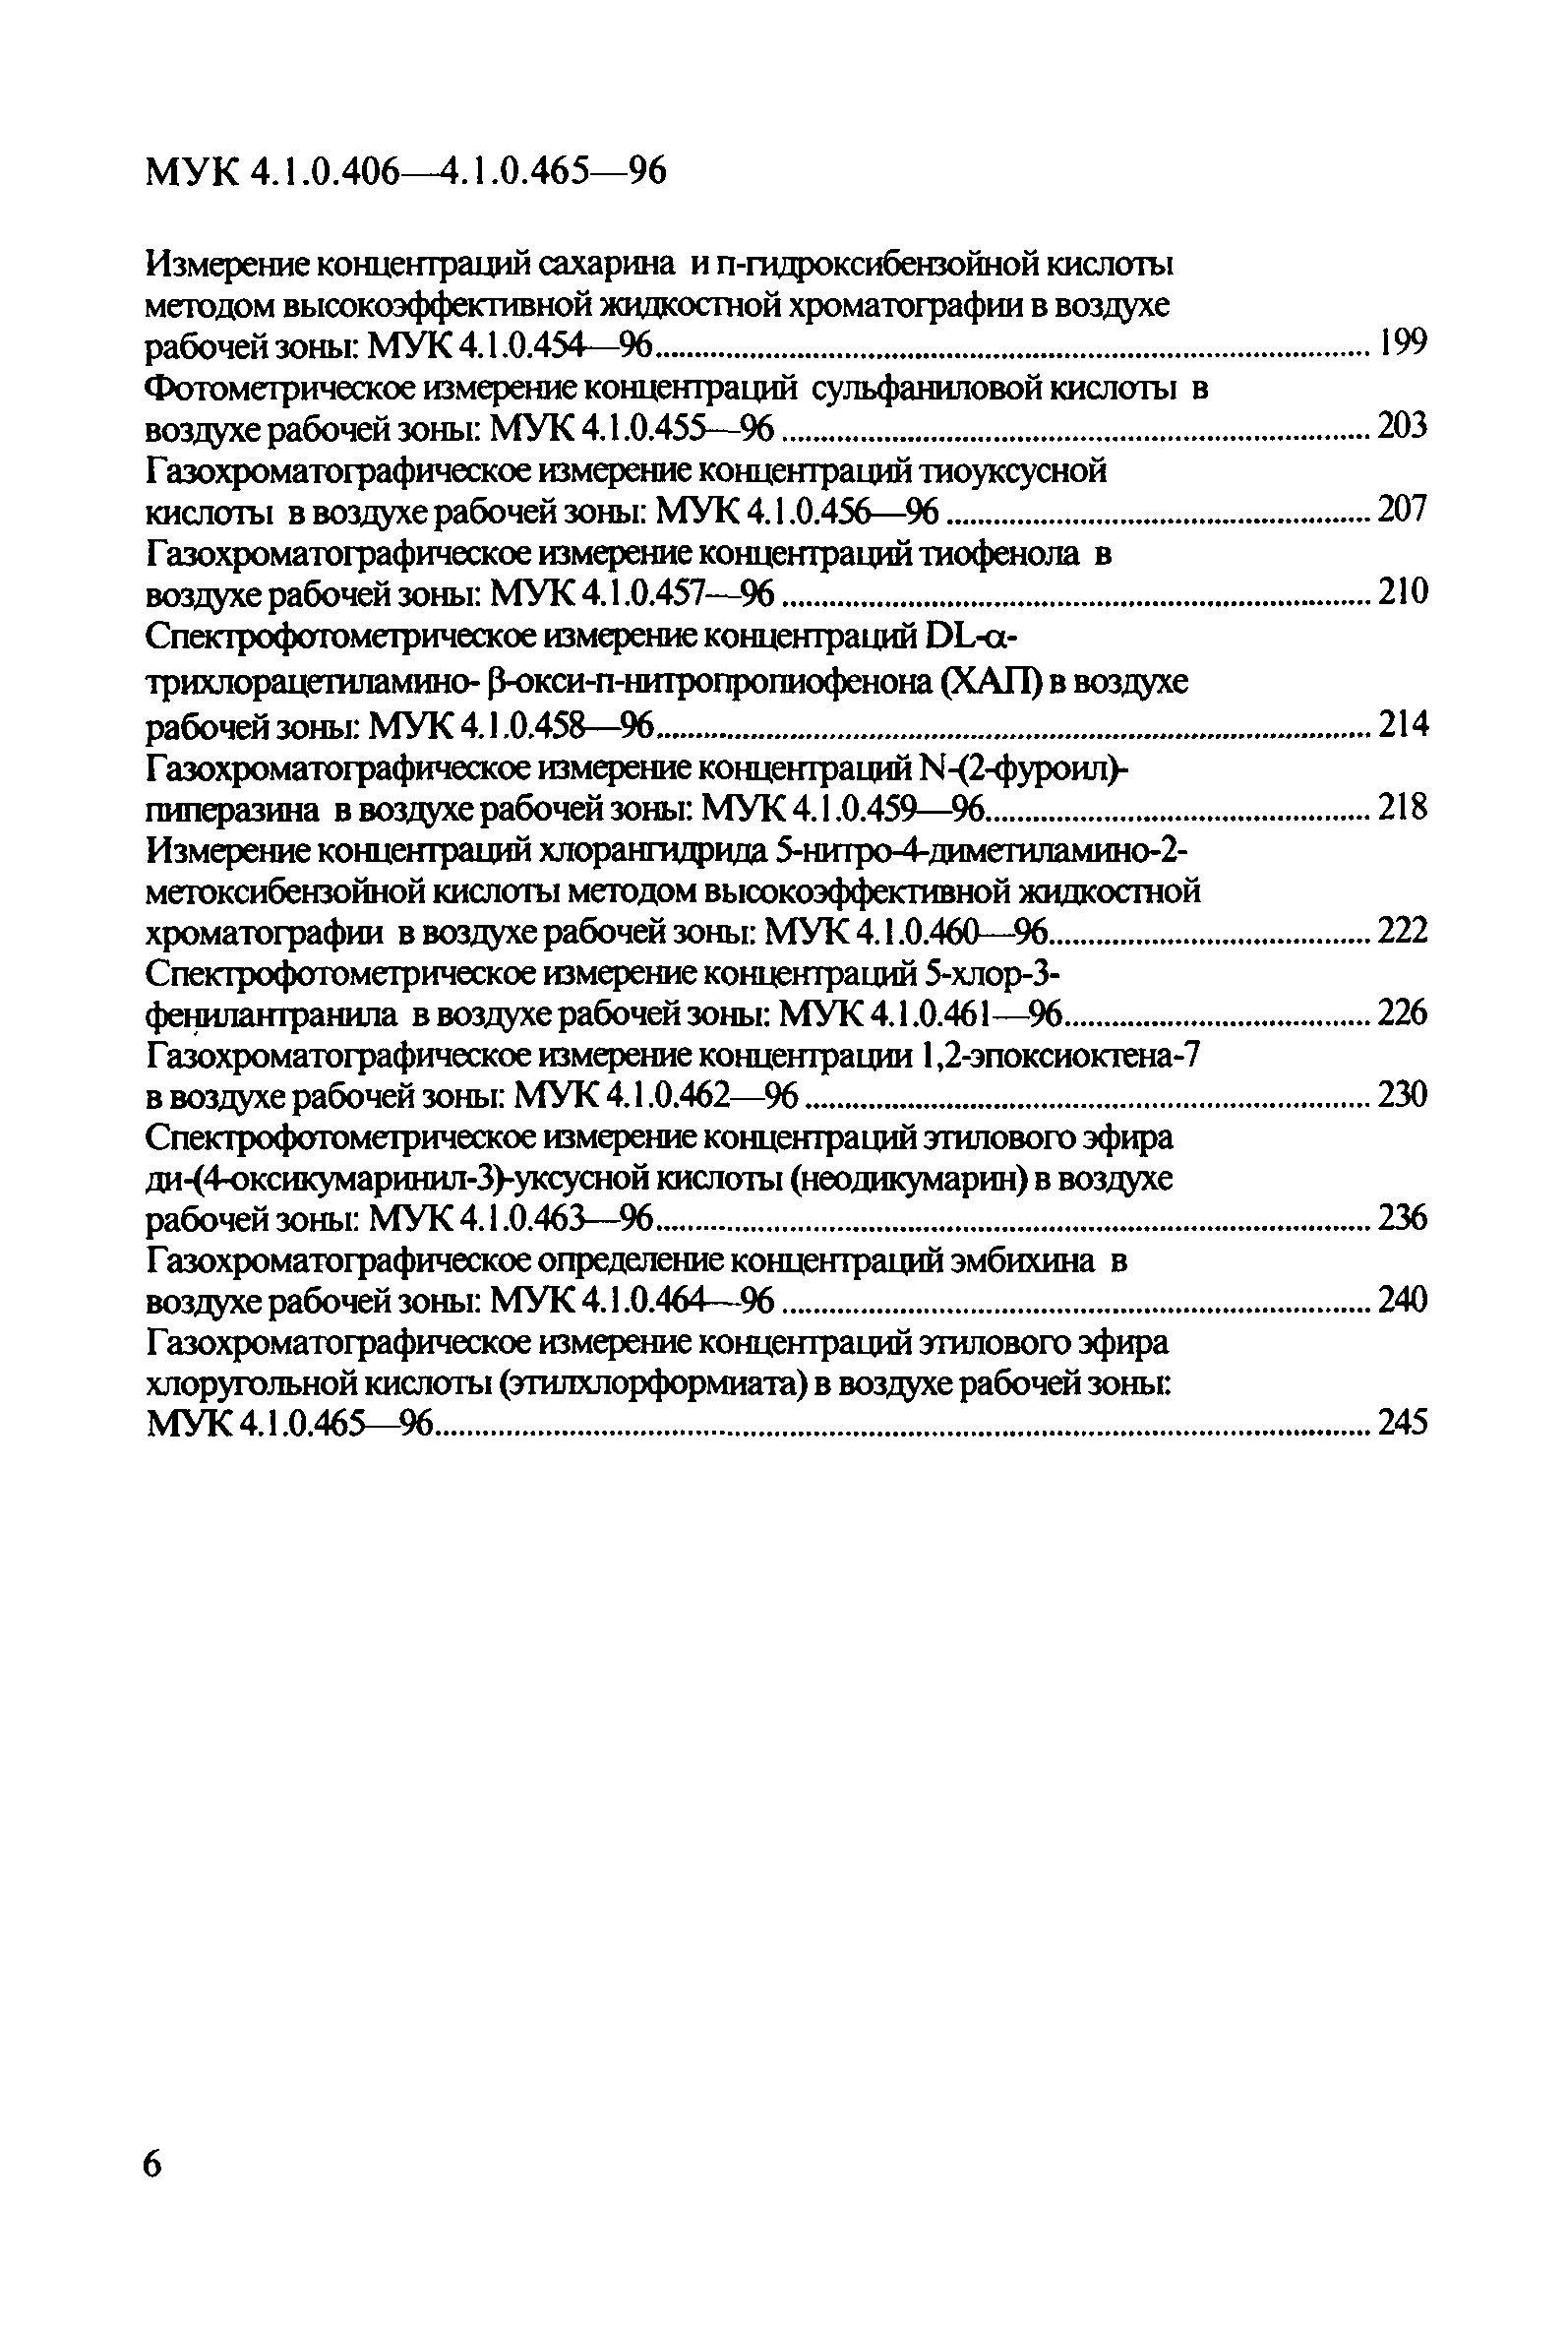 МУК 4.1.0.430-96